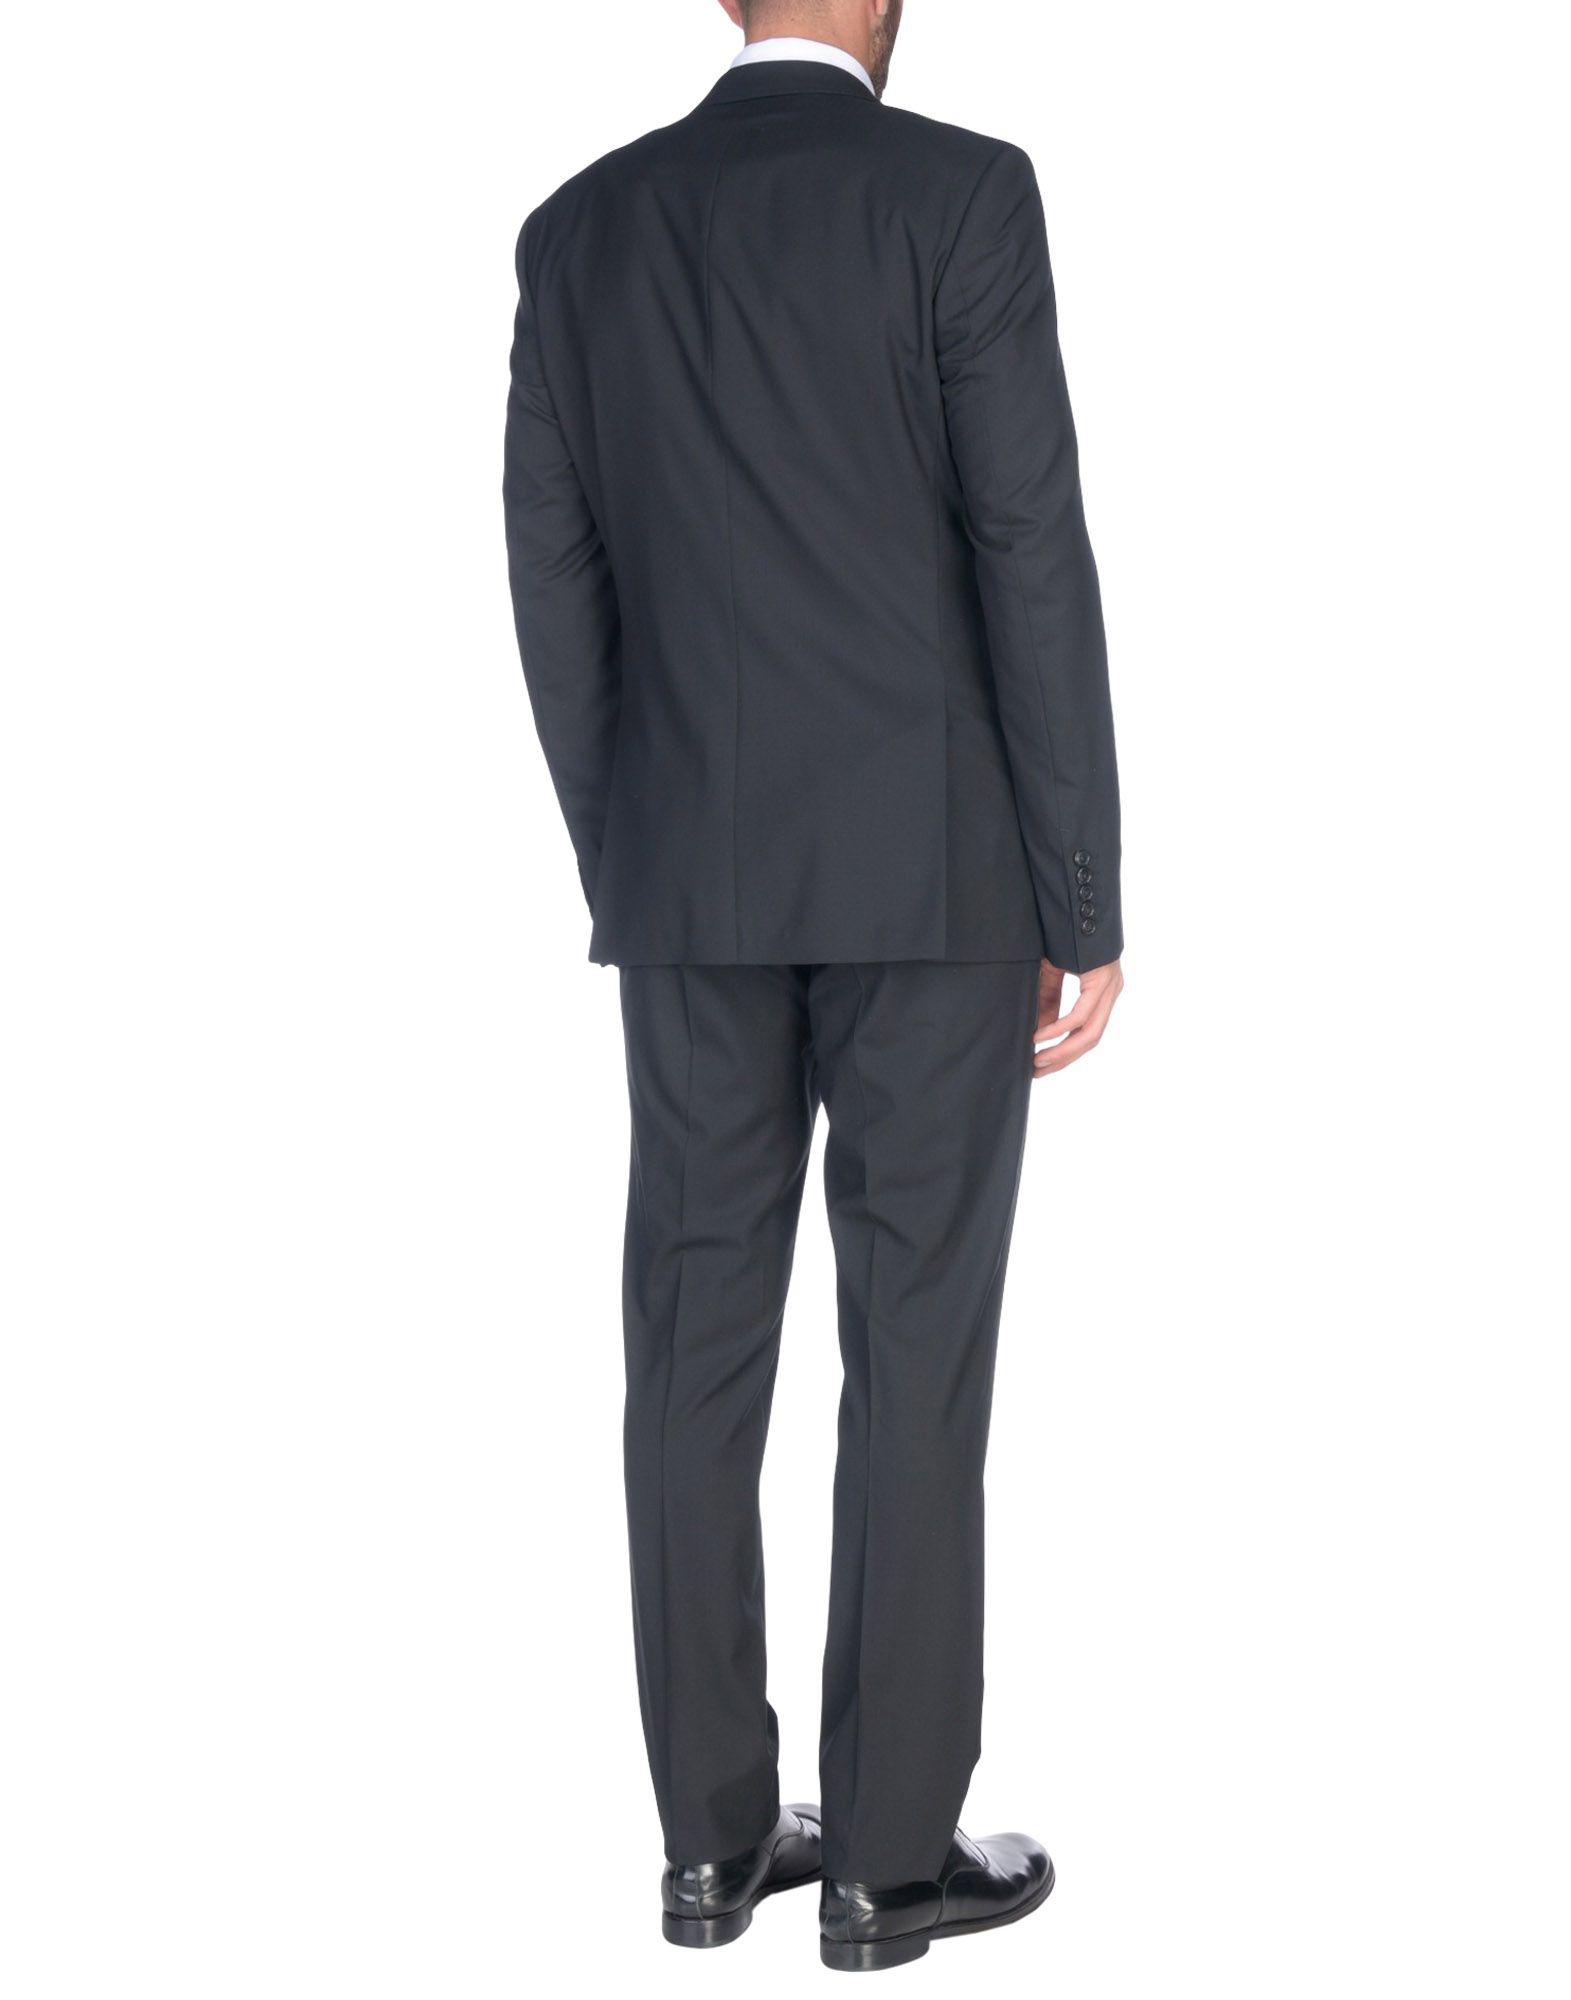 Baldessarini Wool Suit in Black for Men - Lyst